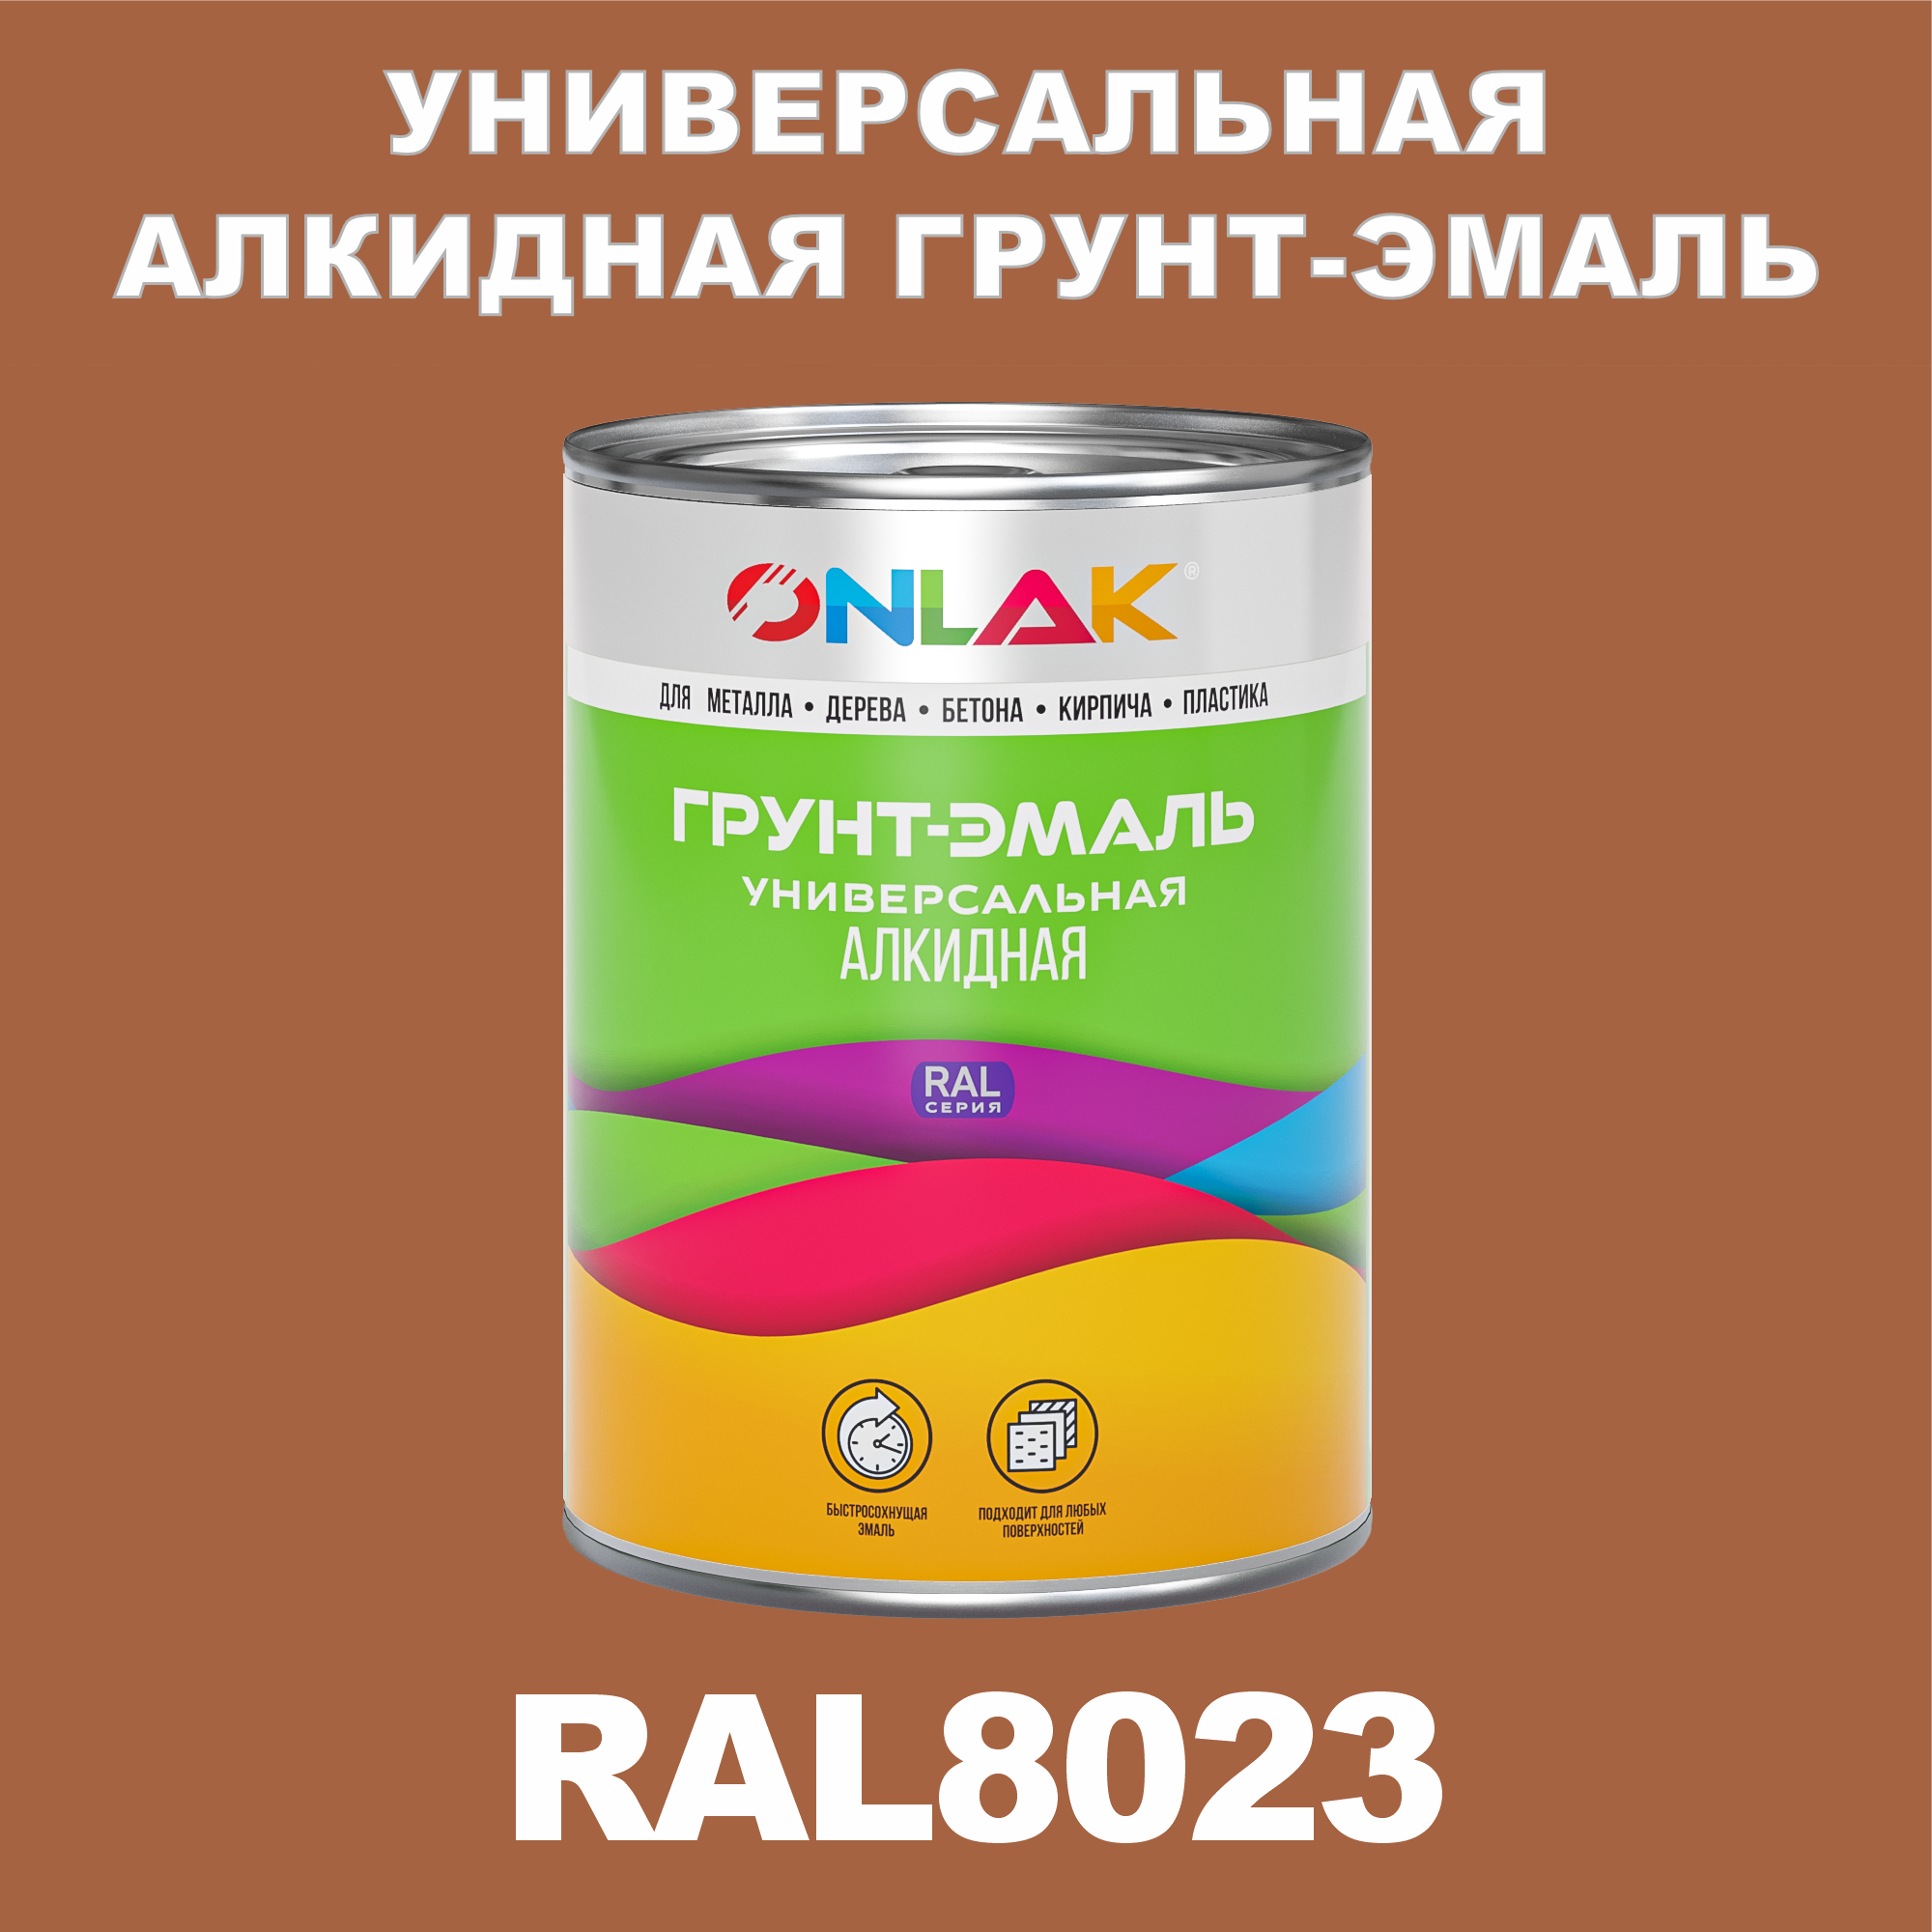 Грунт-эмаль ONLAK 1К RAL8023 антикоррозионная алкидная по металлу по ржавчине 1 кг грунт эмаль skladno по ржавчине алкидная желтая 1 8 кг